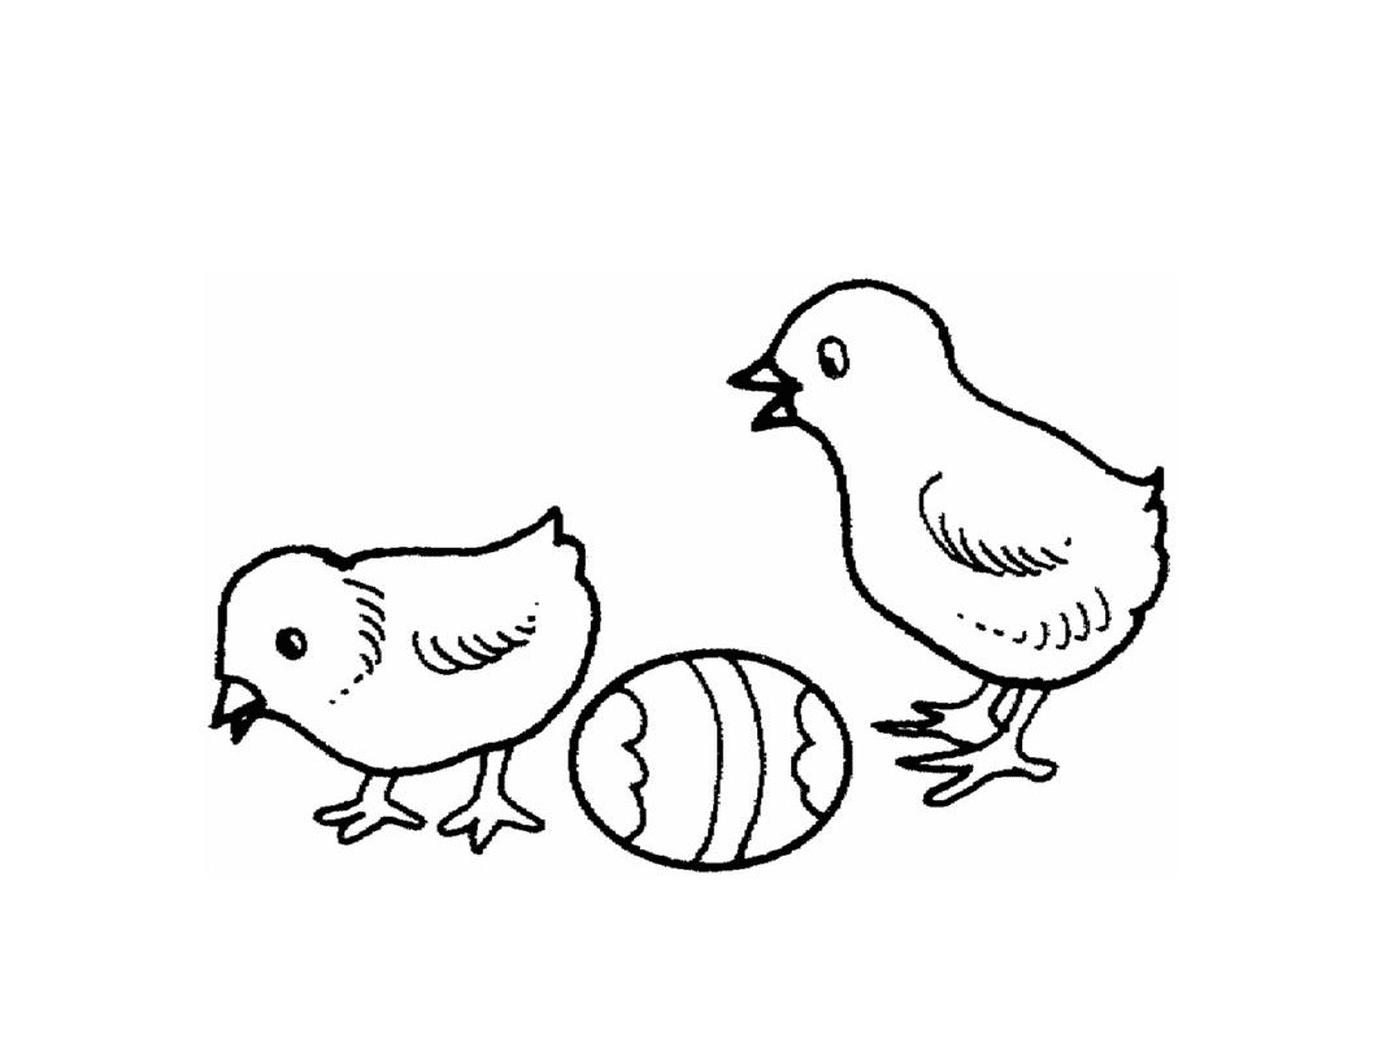   Deux poules et un œuf se tiennent côte à côte 